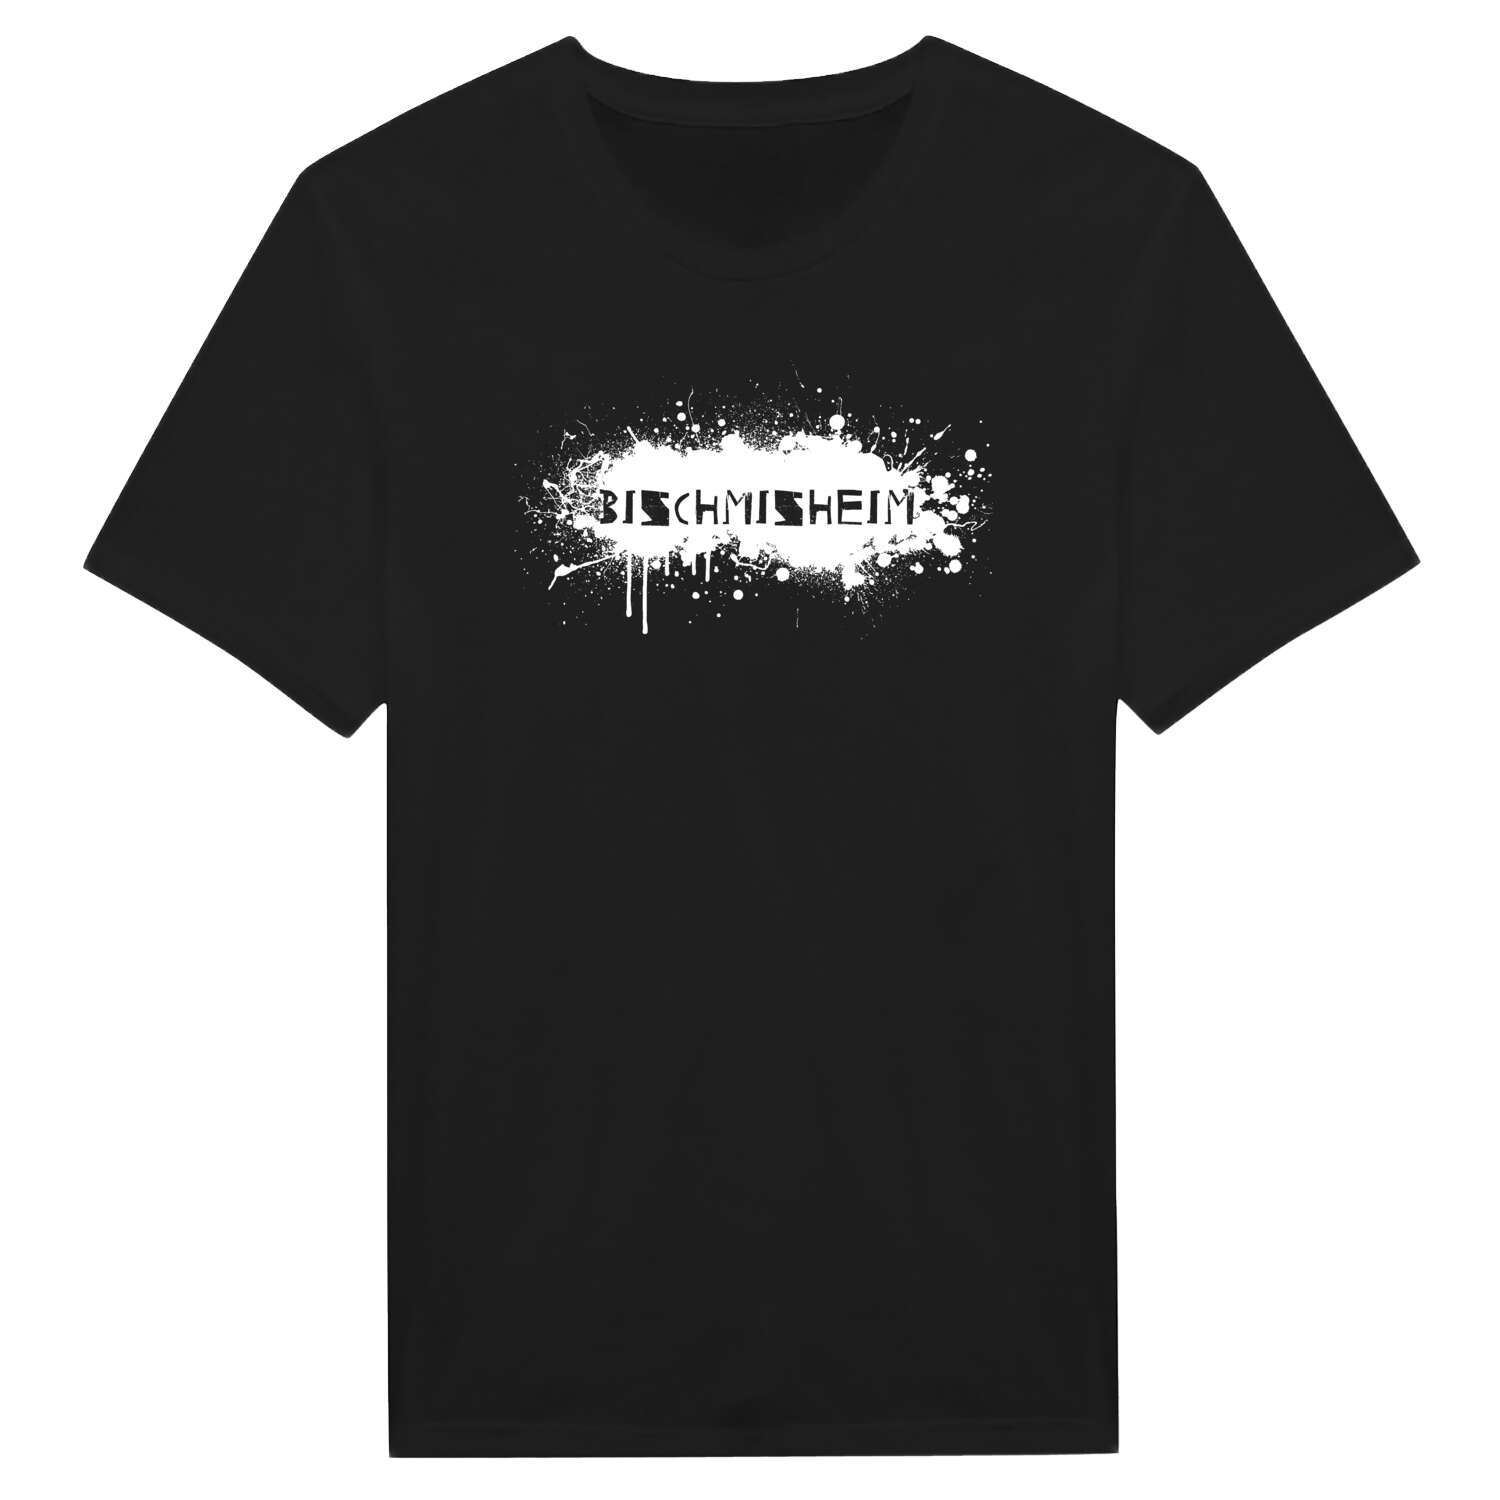 Bischmisheim T-Shirt »Paint Splash Punk«